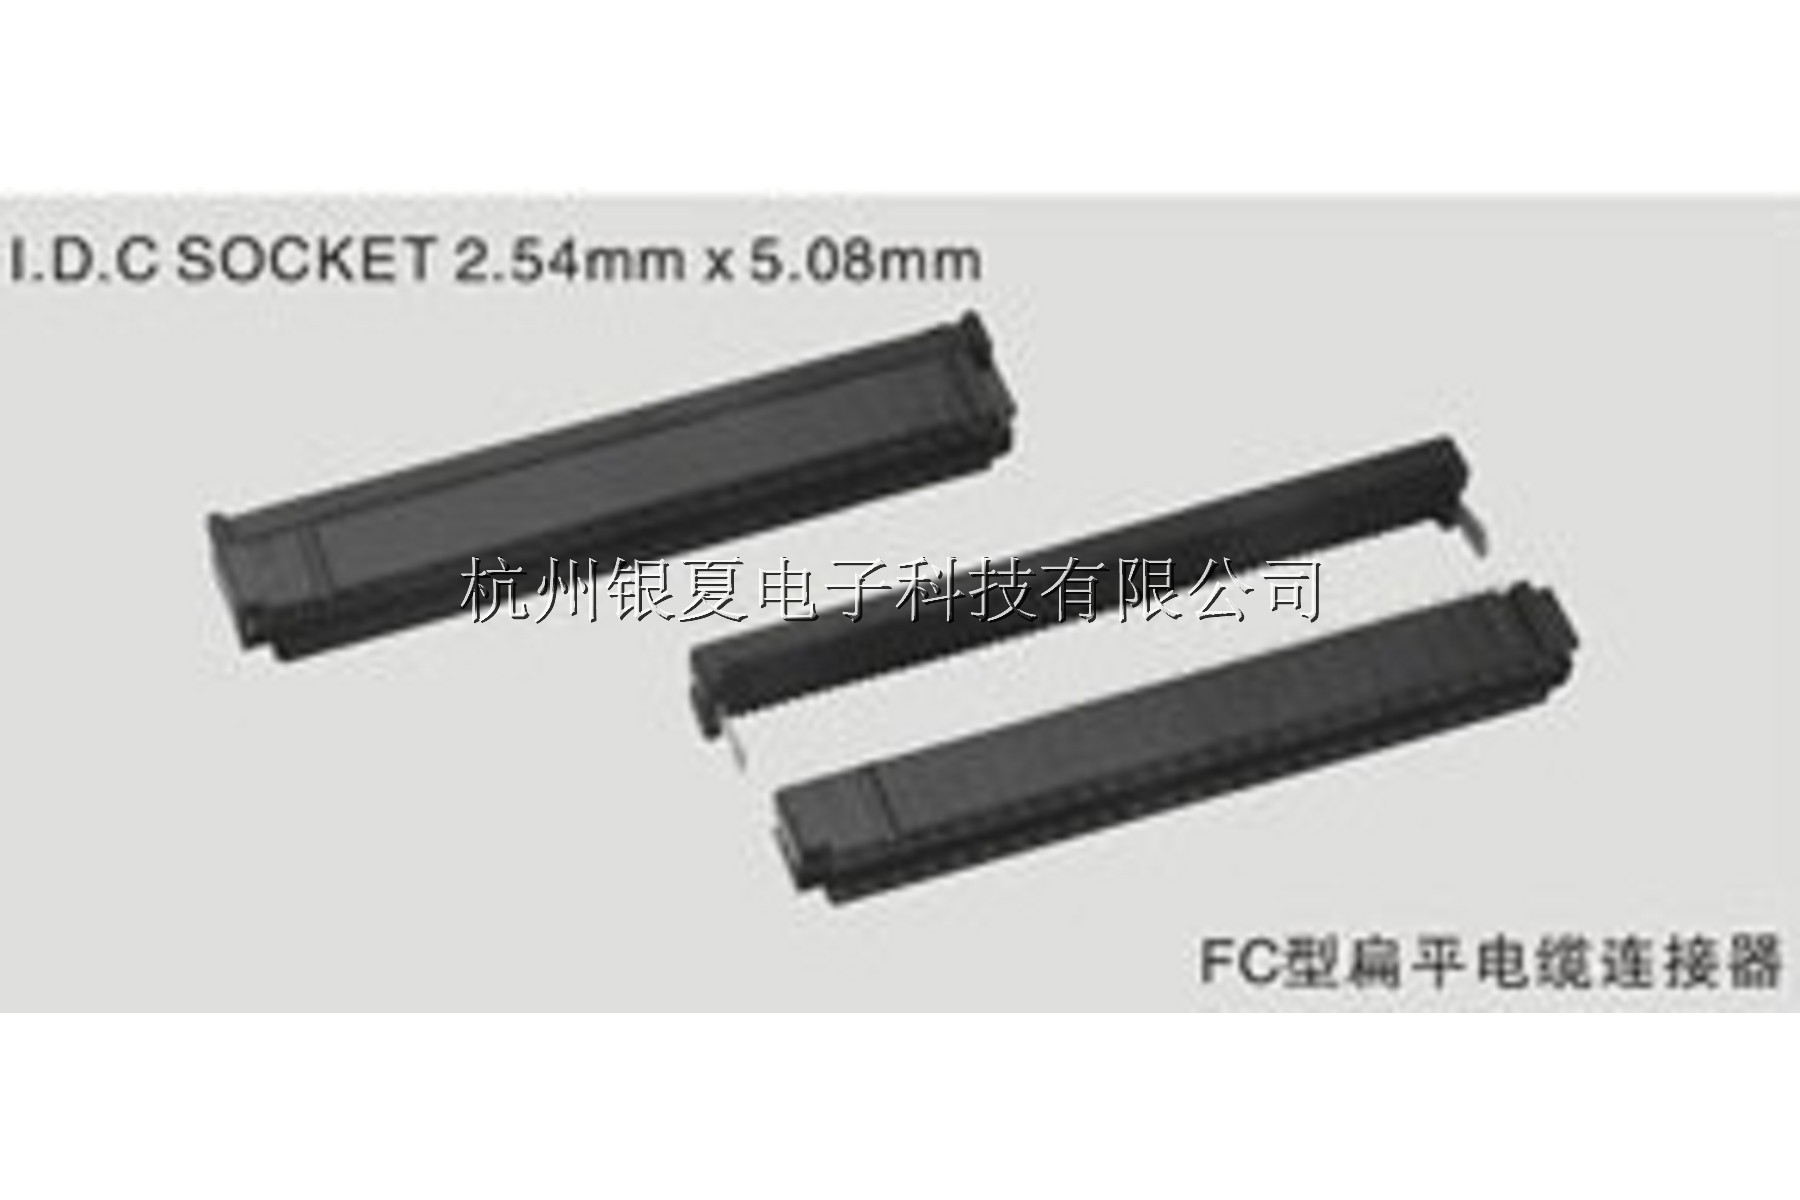 ①FC型扁平电缆连接器I.D.C SOCKET 1.27mm5.08 mm